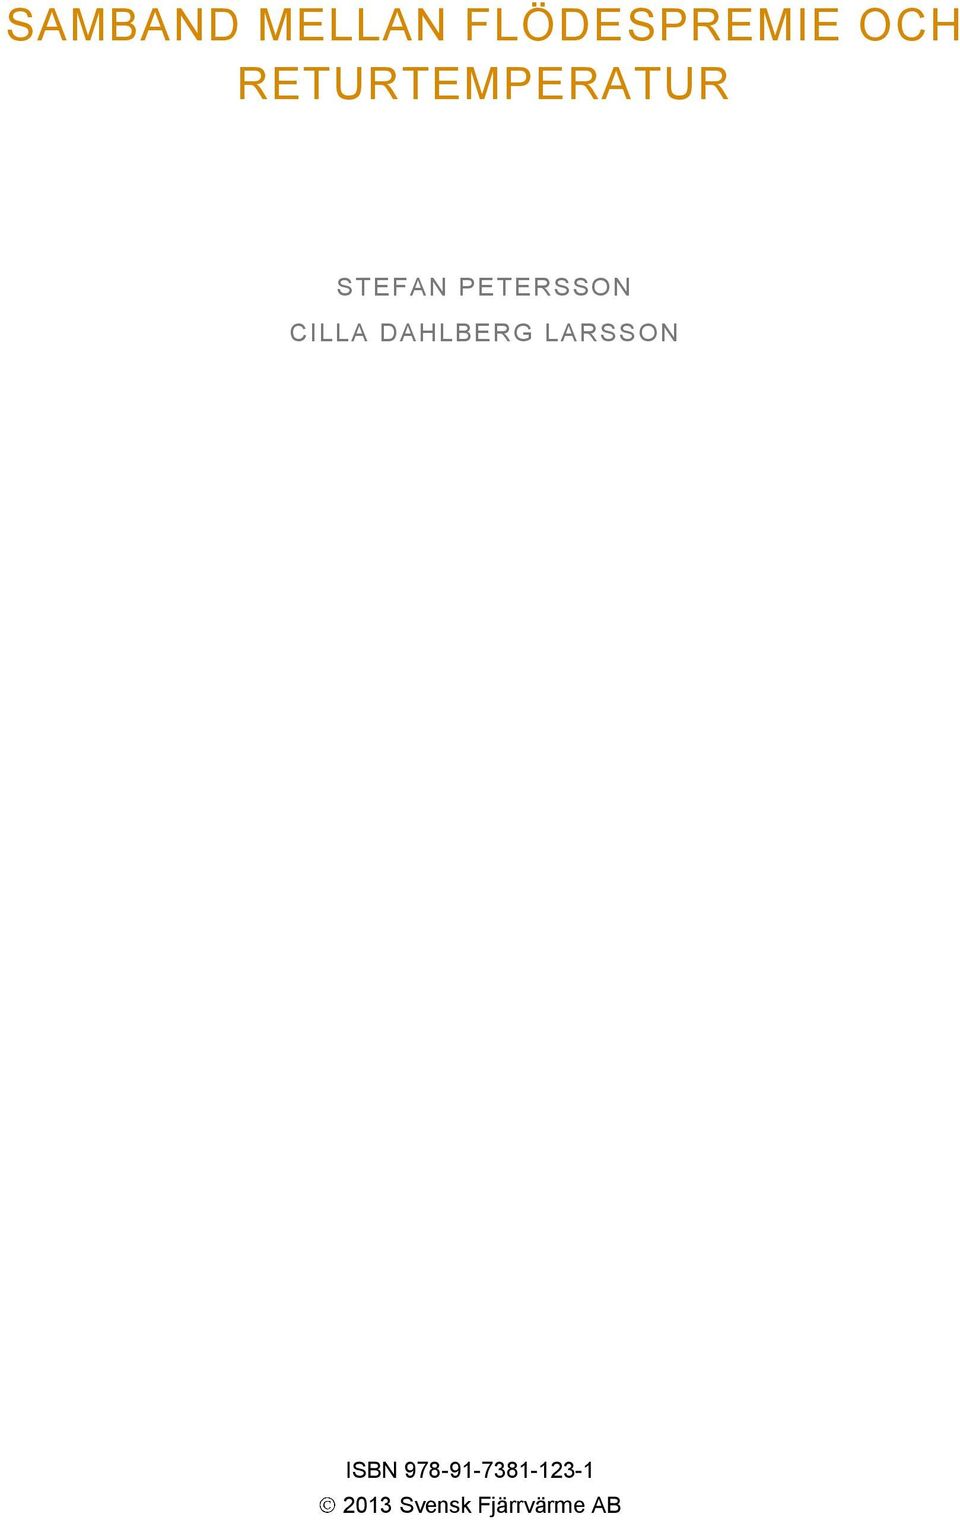 CILLA DAHLBERG LARSSON ISBN